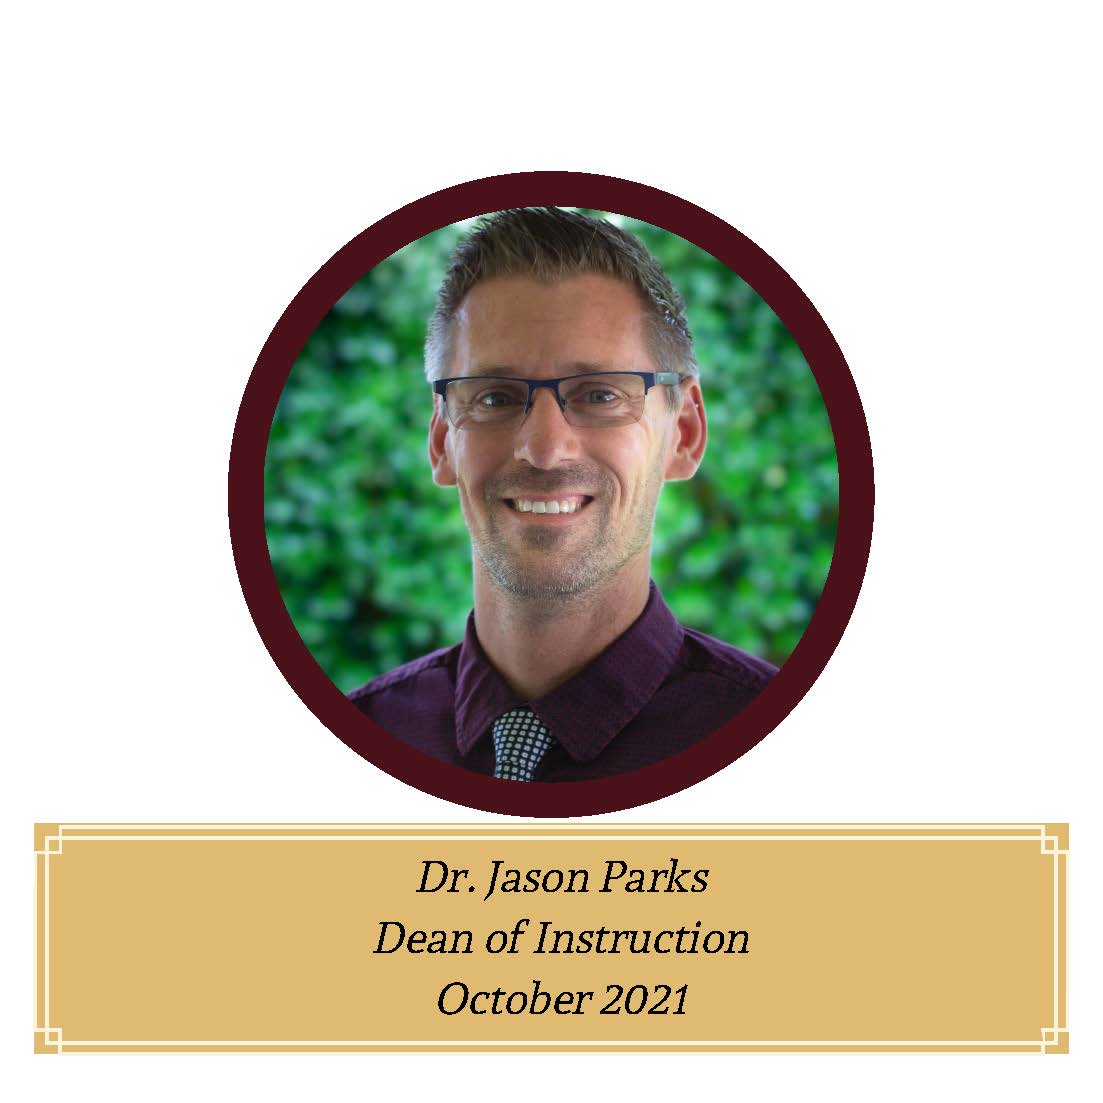 Dr. Jason Parks